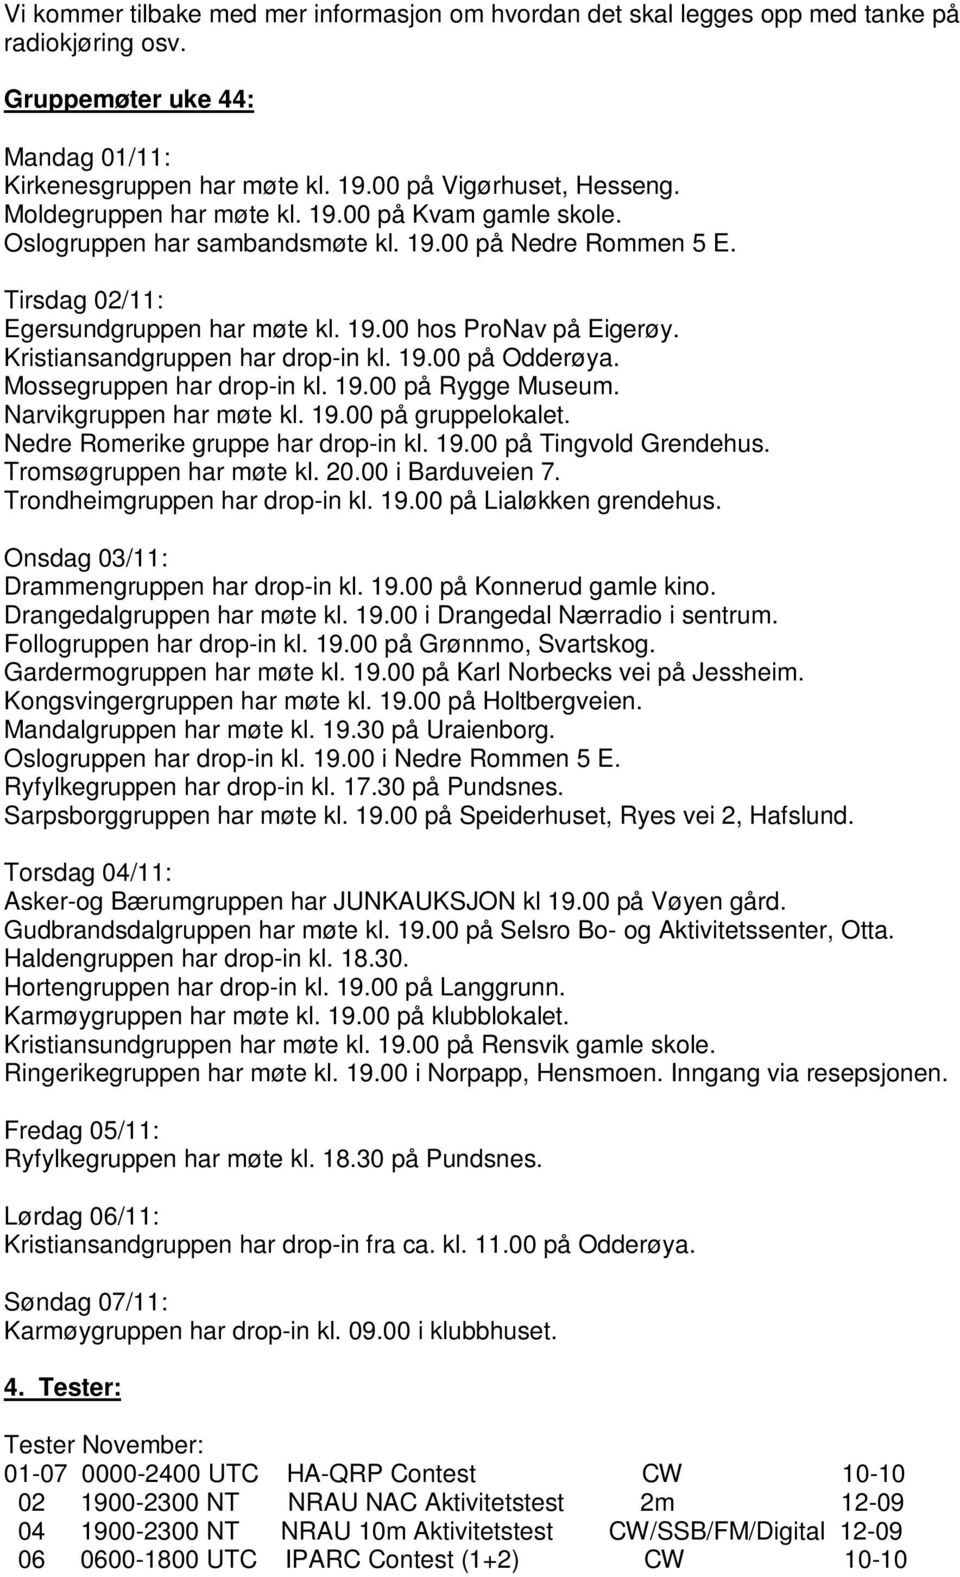 Kristiansandgruppen har drop-in kl. 19.00 på Odderøya. Mossegruppen har drop-in kl. 19.00 på Rygge Museum. Narvikgruppen har møte kl. 19.00 på gruppelokalet. Nedre Romerike gruppe har drop-in kl. 19.00 på Tingvold Grendehus.